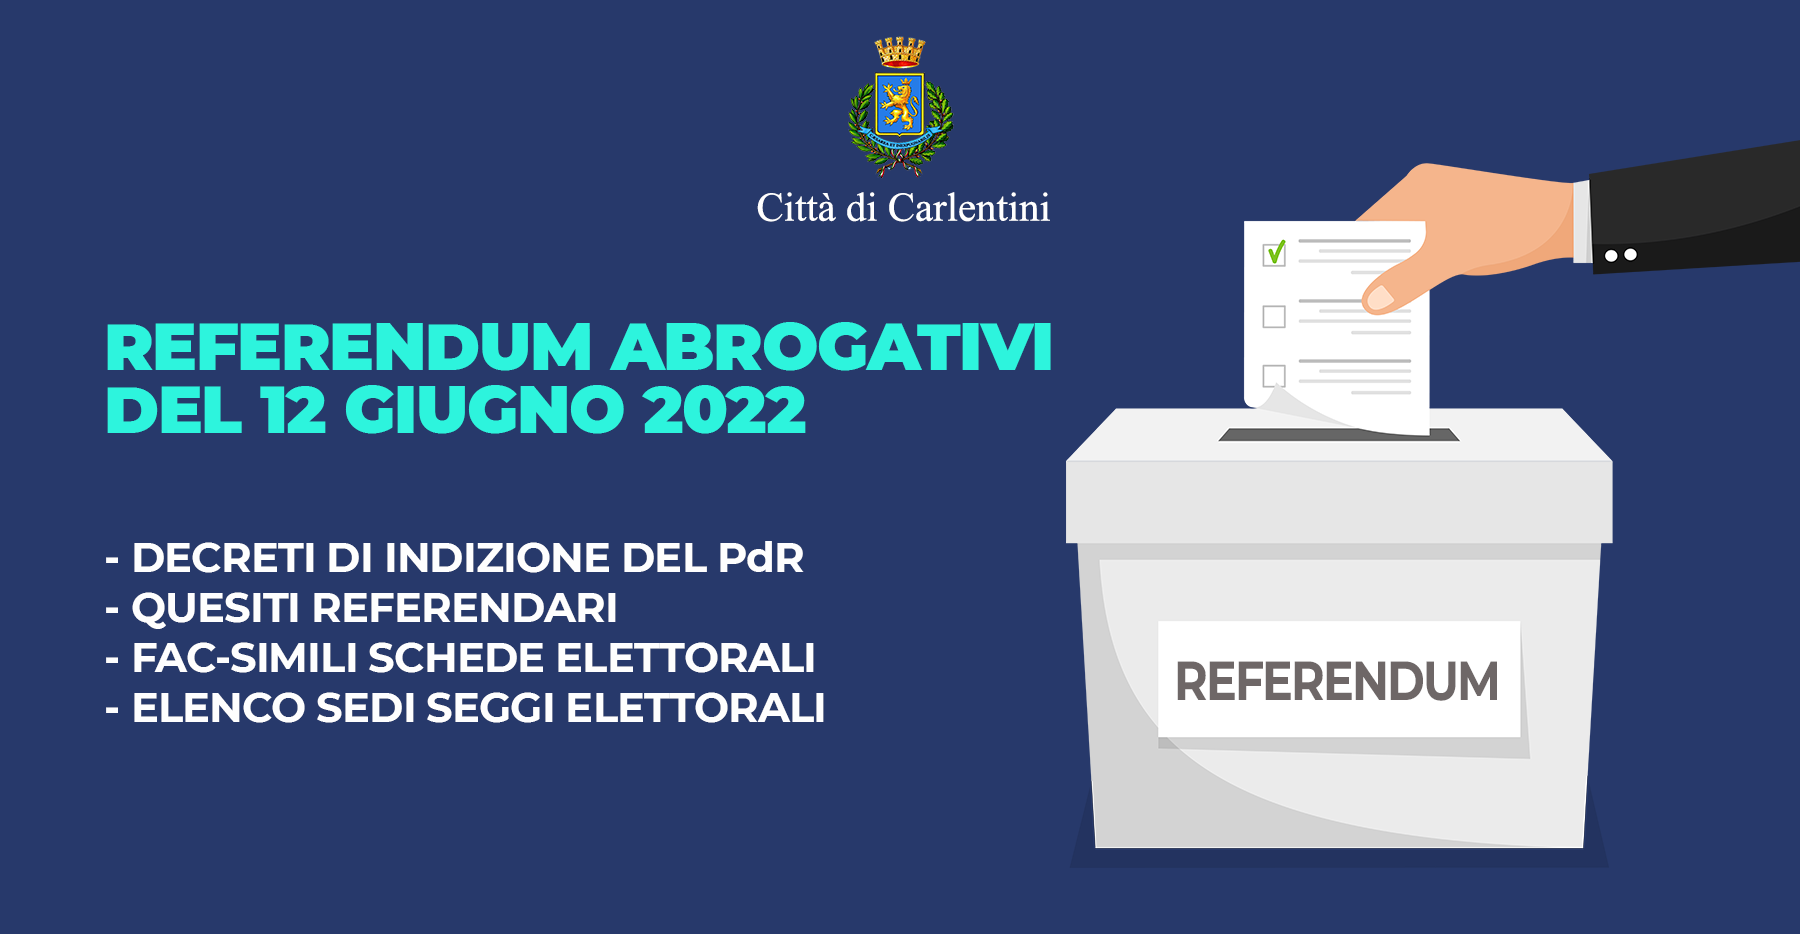 Referendum abrogativi del 12 giugno 2022: decreti di indizione, quesiti referendari e sedi dei seggi